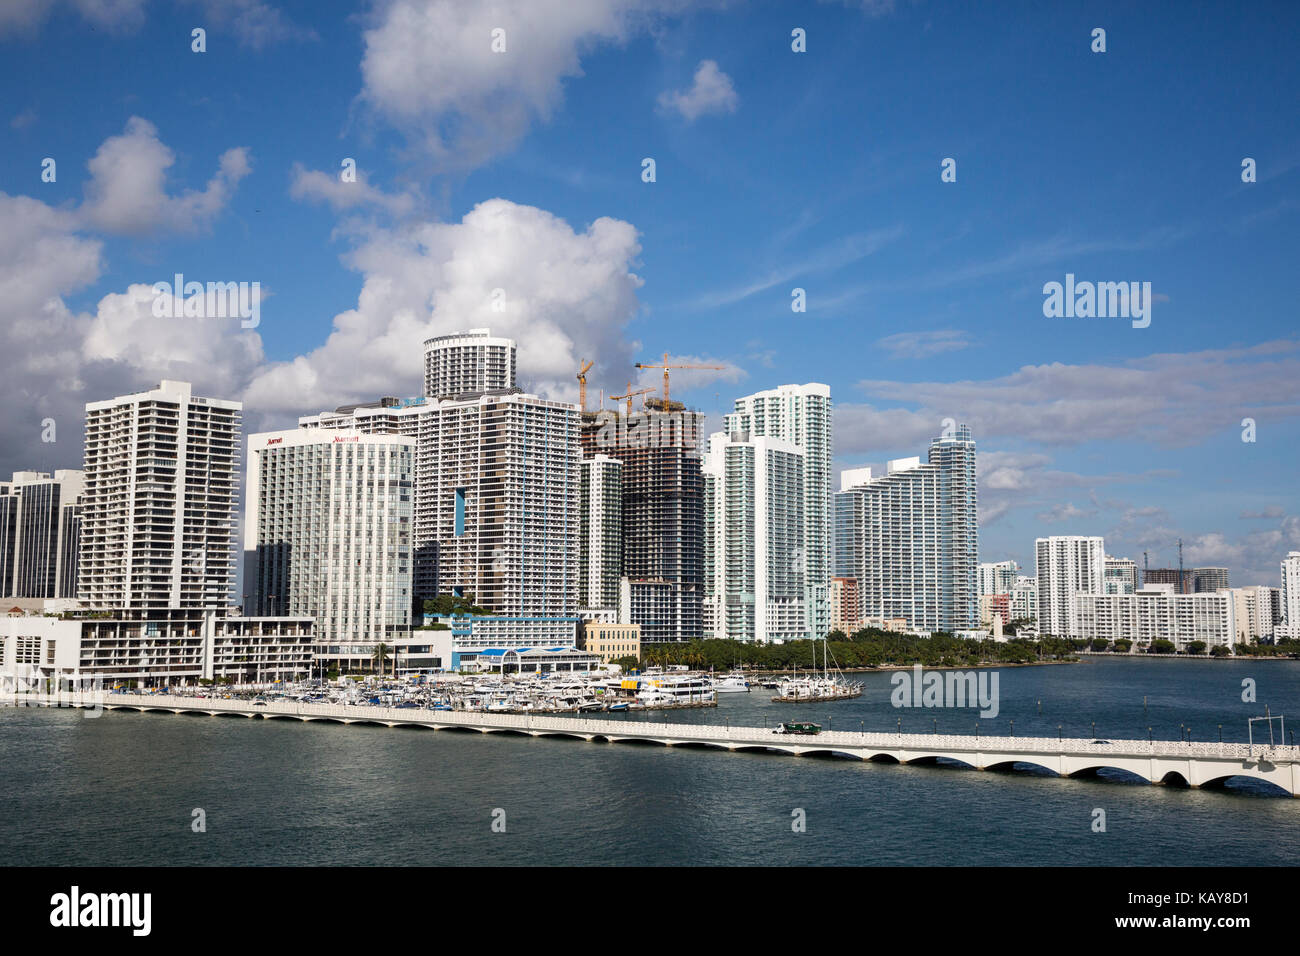 Miami, en Floride. Ville de Miami derrière le Venetian Causeway. Banque D'Images